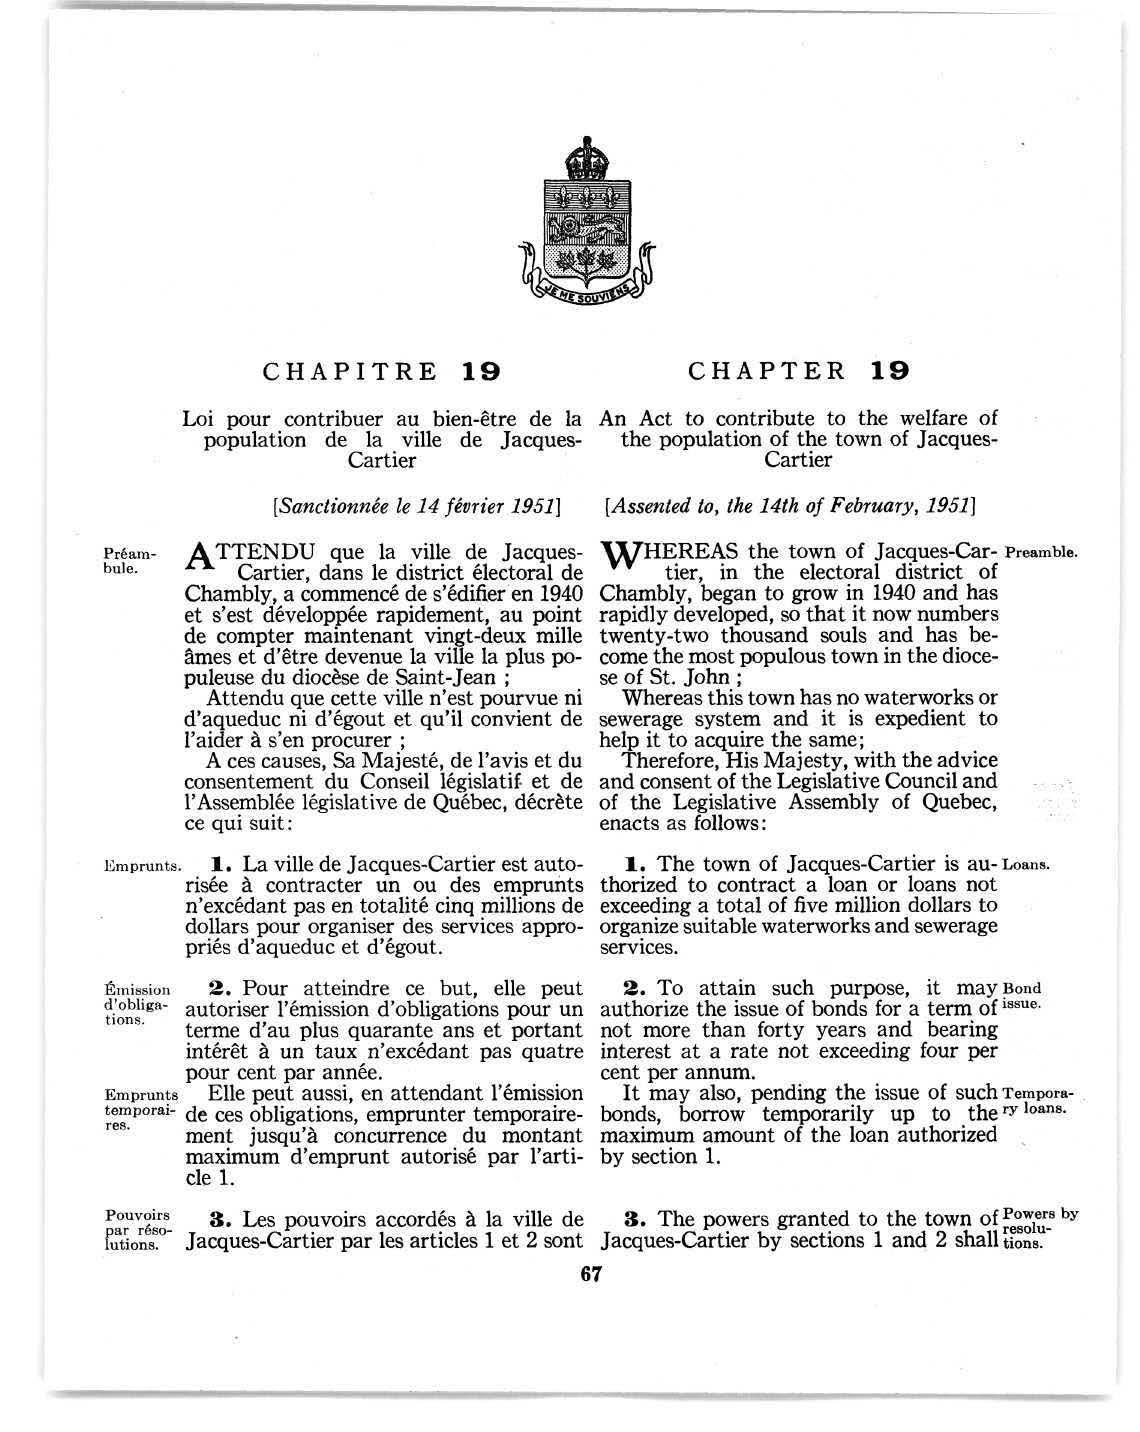 Loi pour contribuer au bien-être de la population de la ville de Jacques-Cartier